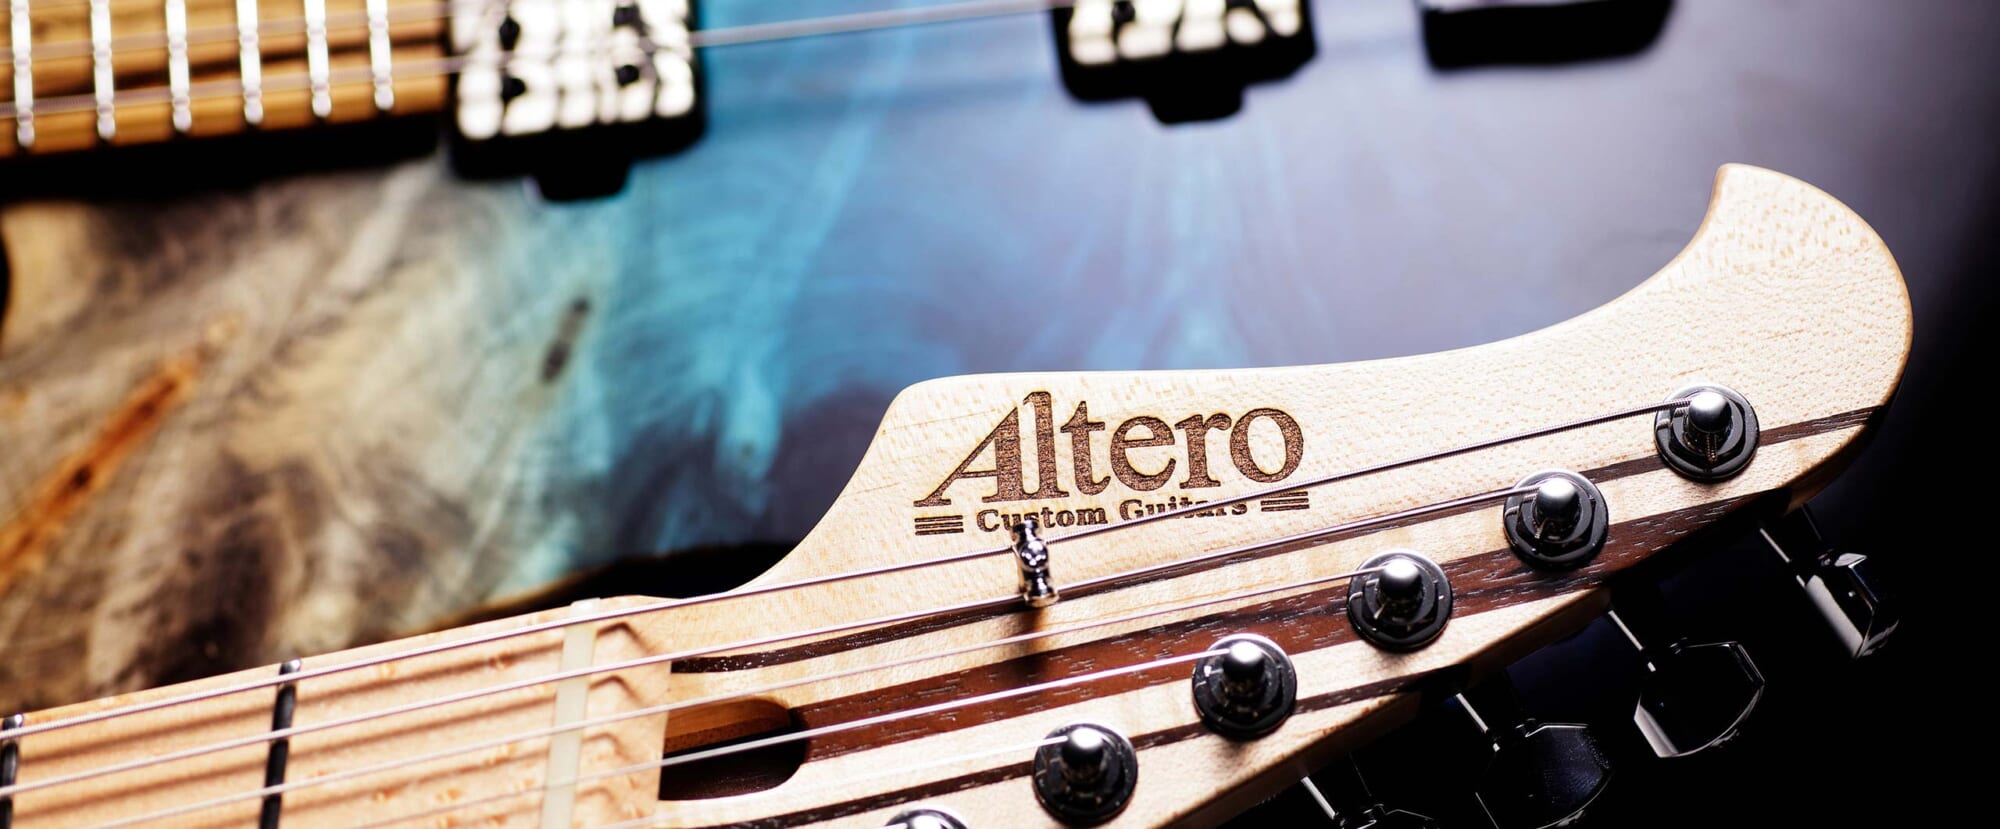 10周年を迎えたAltero Custom Guitarsの真骨頂と新たな可能性。